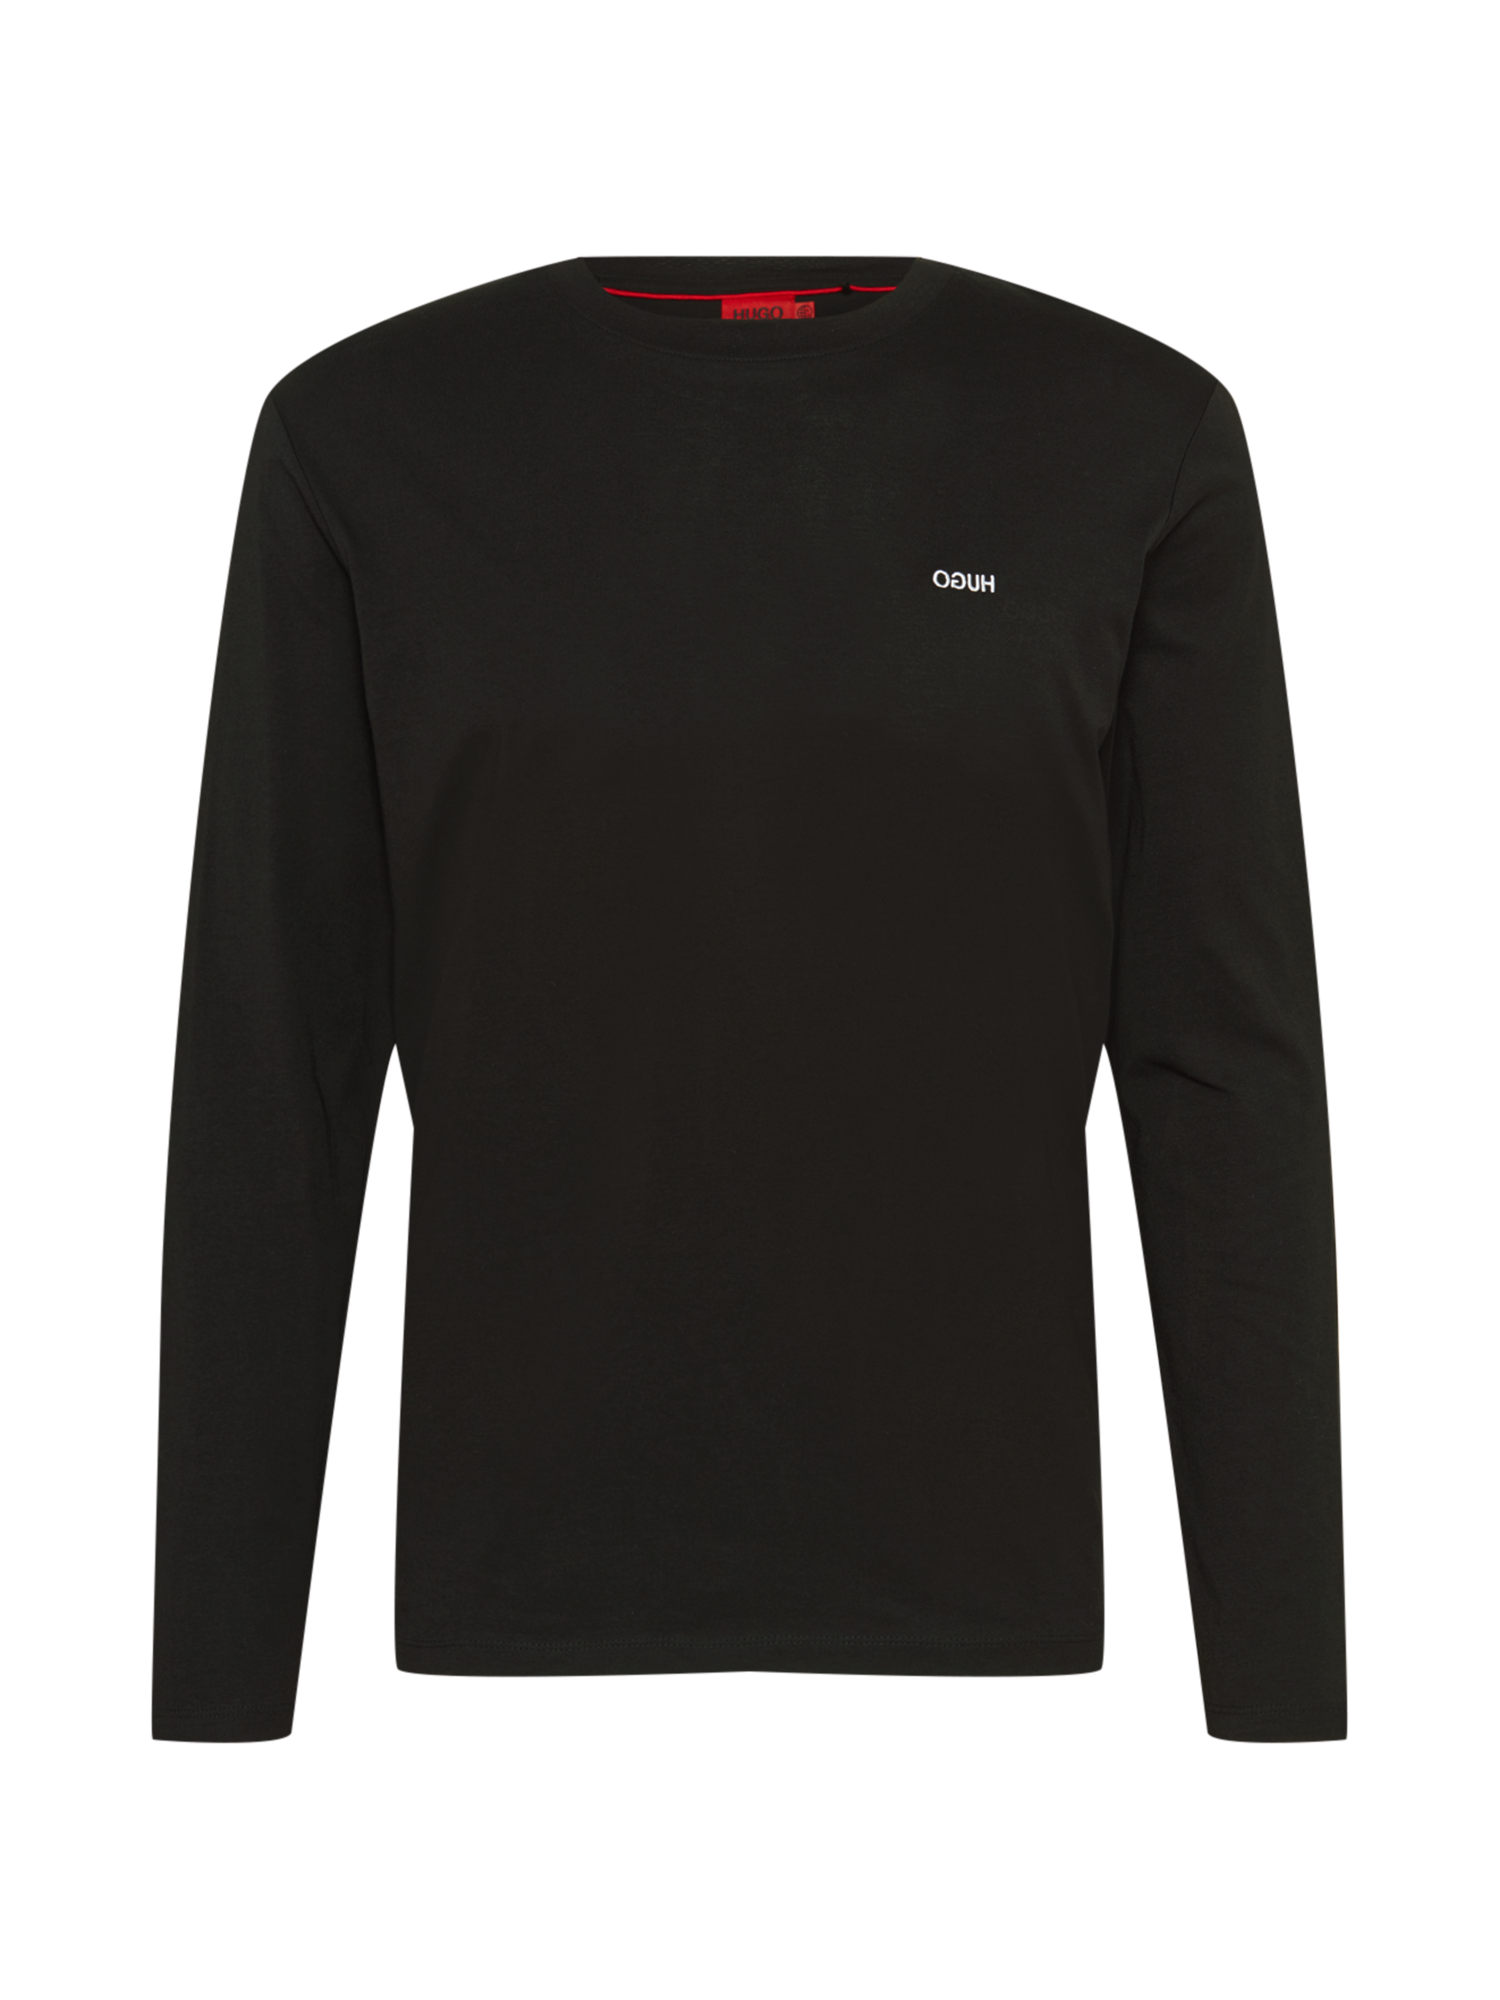 E6CNh Odzież HUGO Koszulka Derol w kolorze Czarnym 